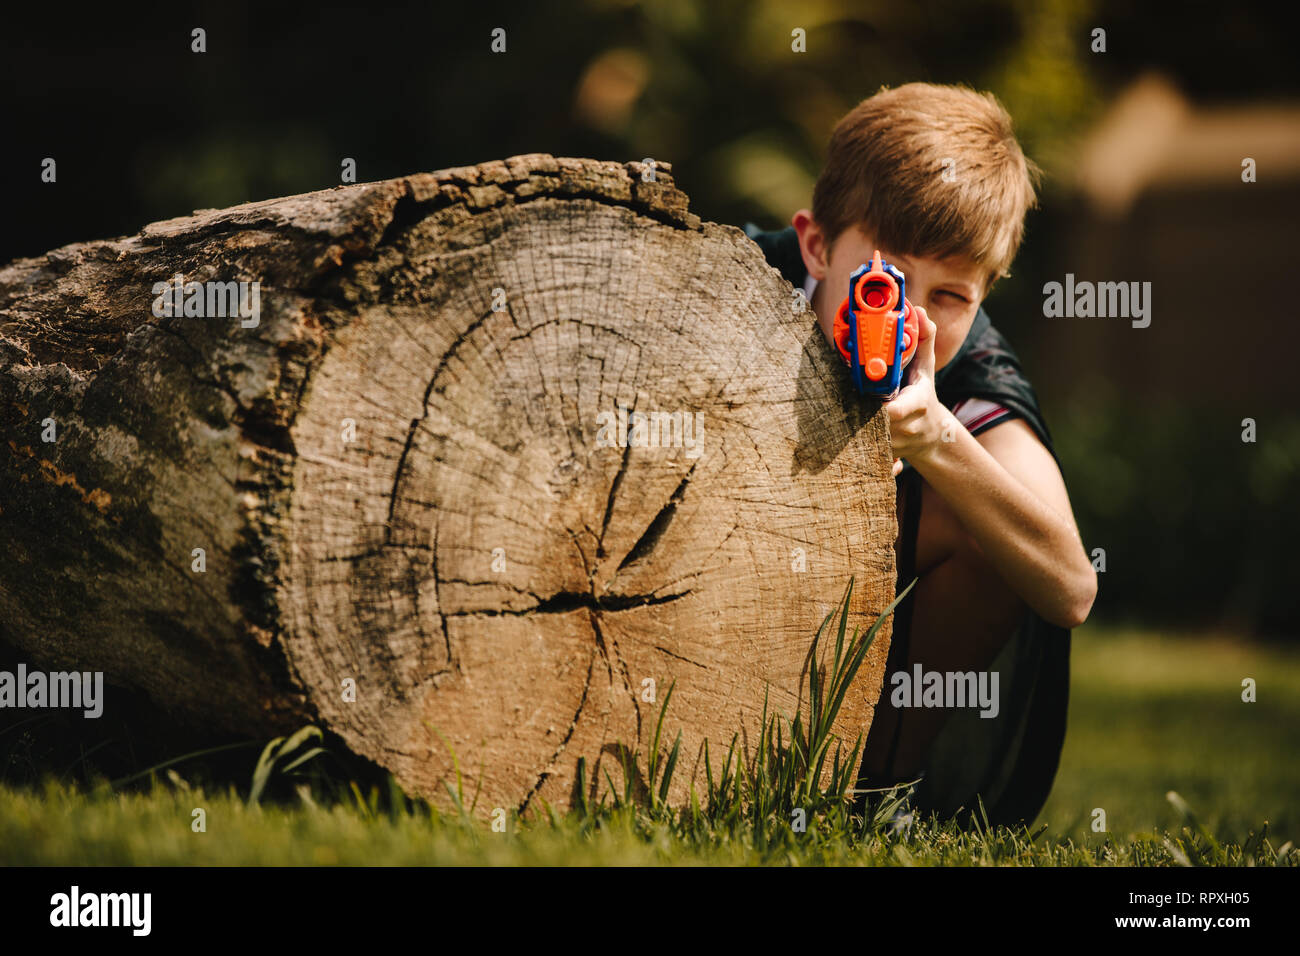 Preteen boy con pistola giocattolo preparare per attaccare e giocare all'aperto. Bambino con pistola giocattolo di nascondersi dietro un log all'aperto nel parco. Foto Stock